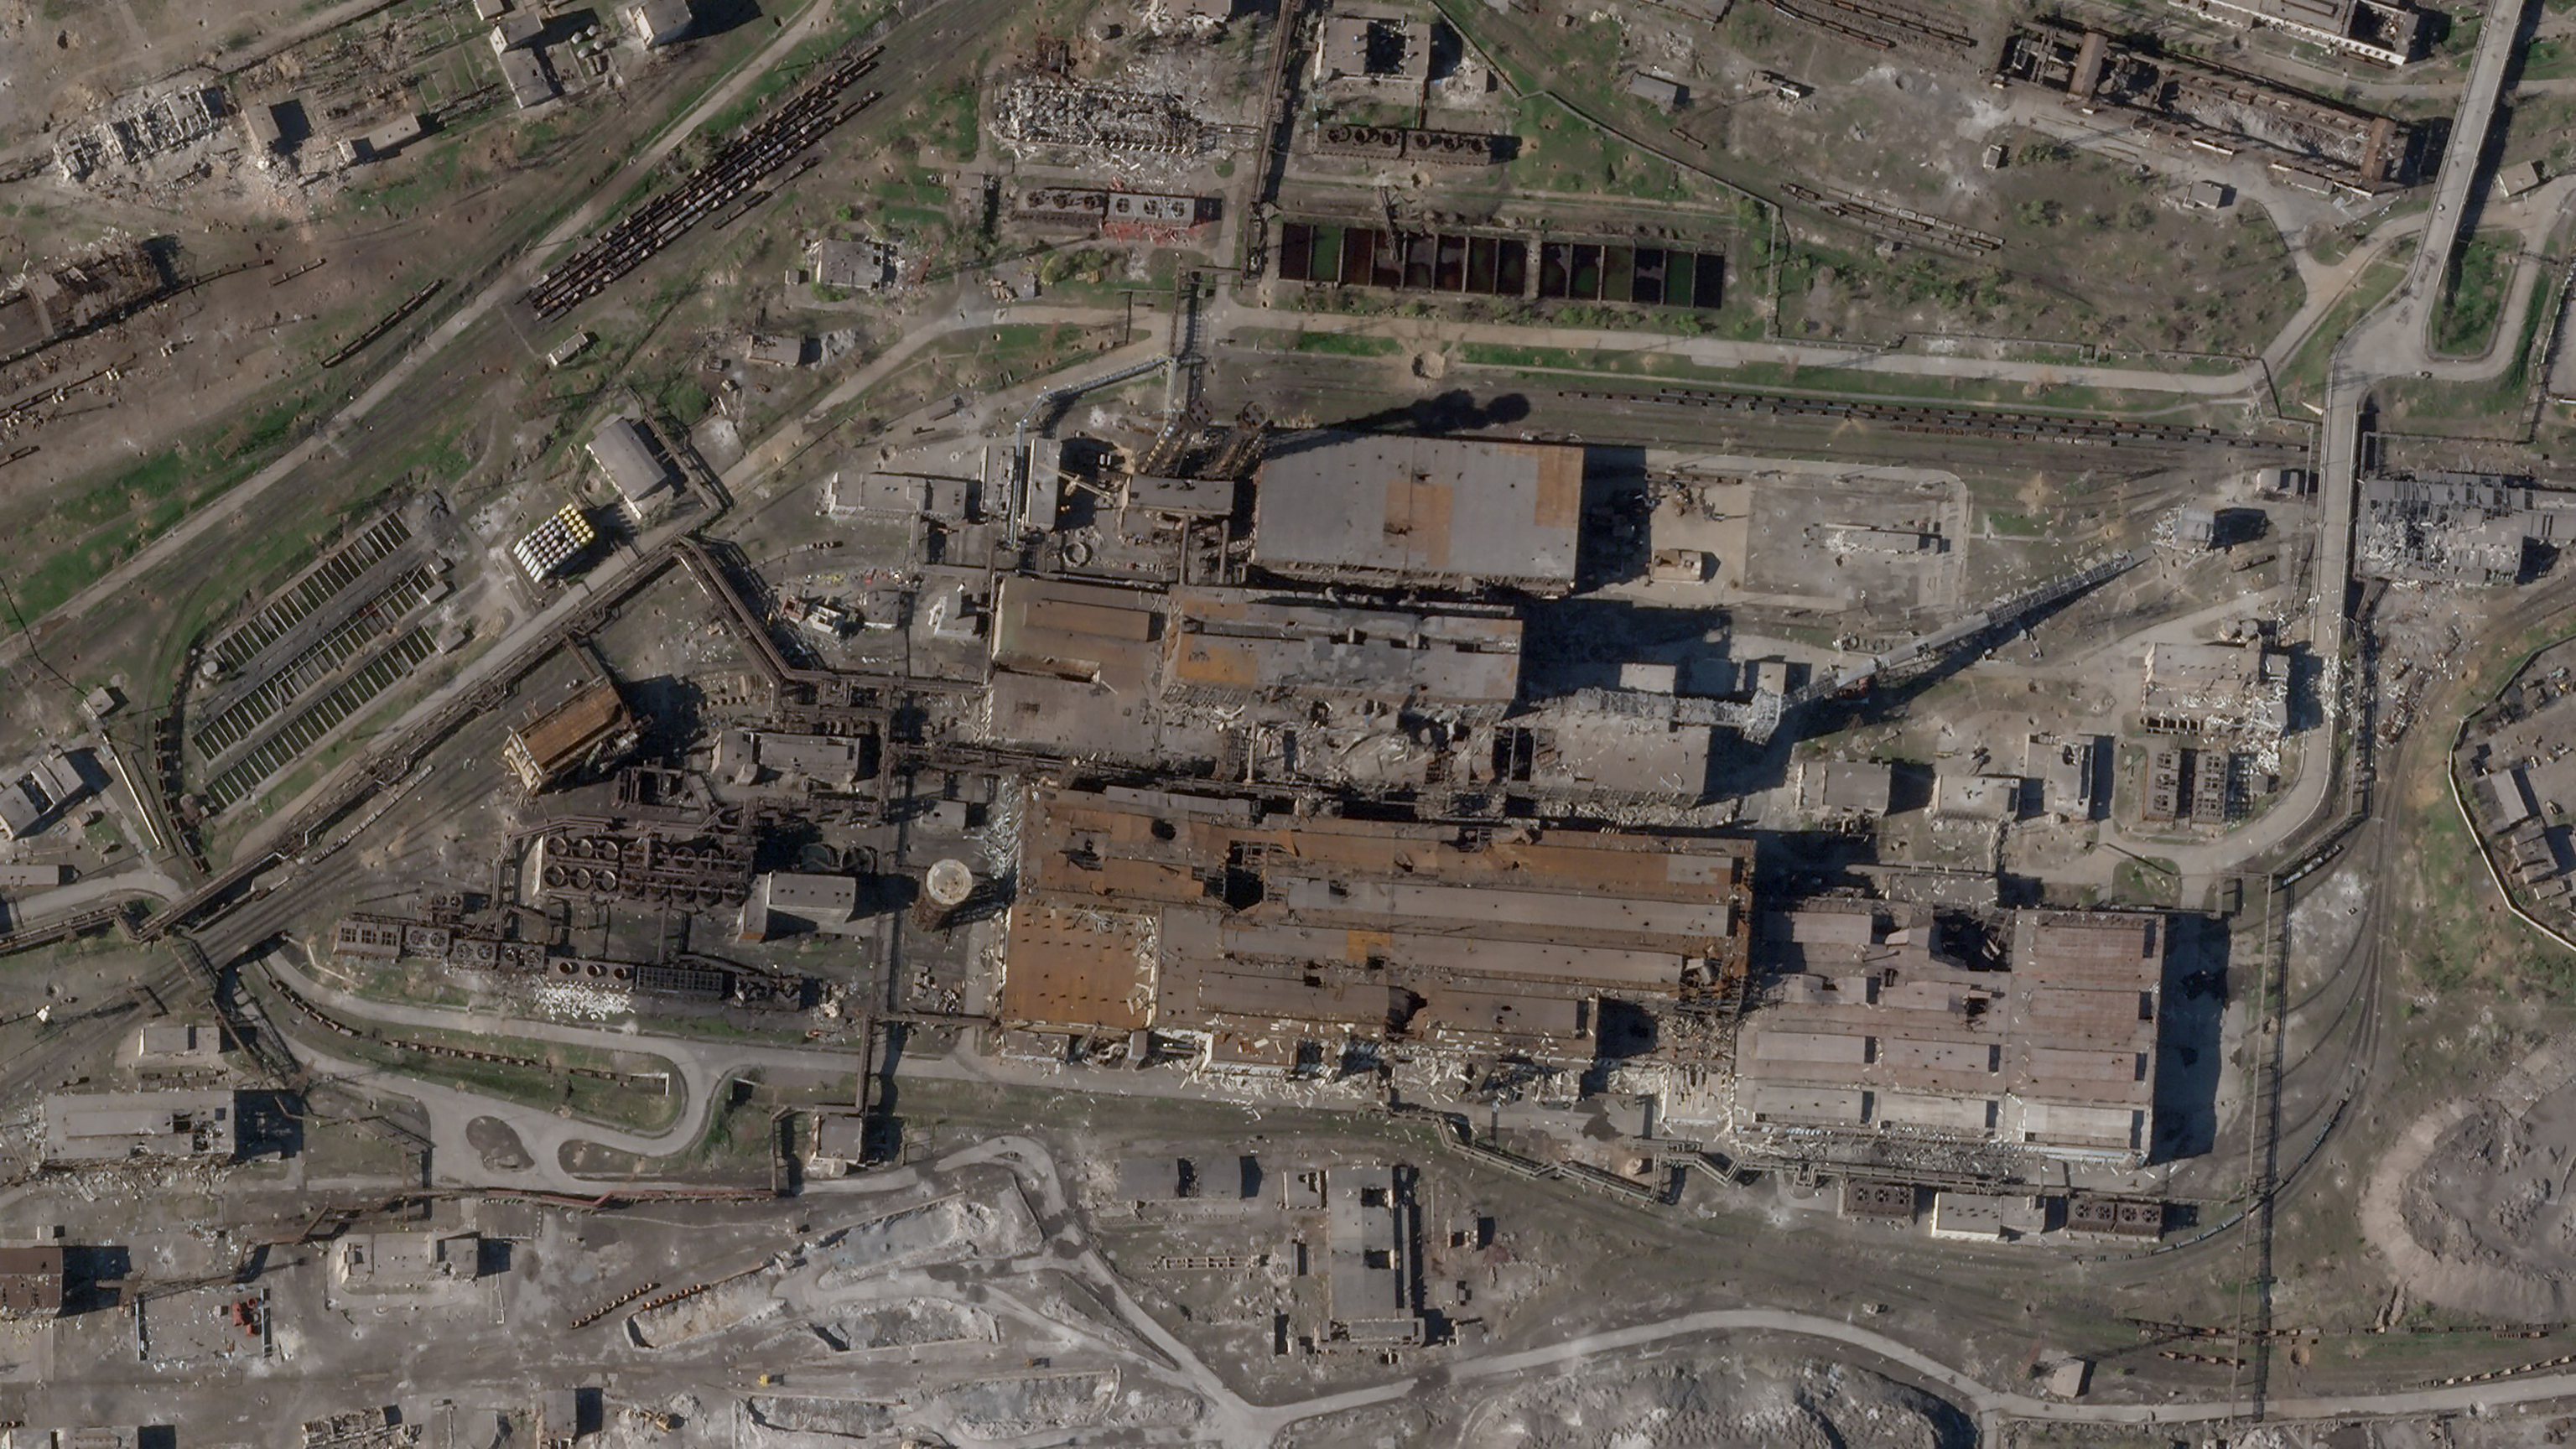 Imágenes de satélite de la siderúrgica de Azovstal, en Mariupol, muestran una gran devastación